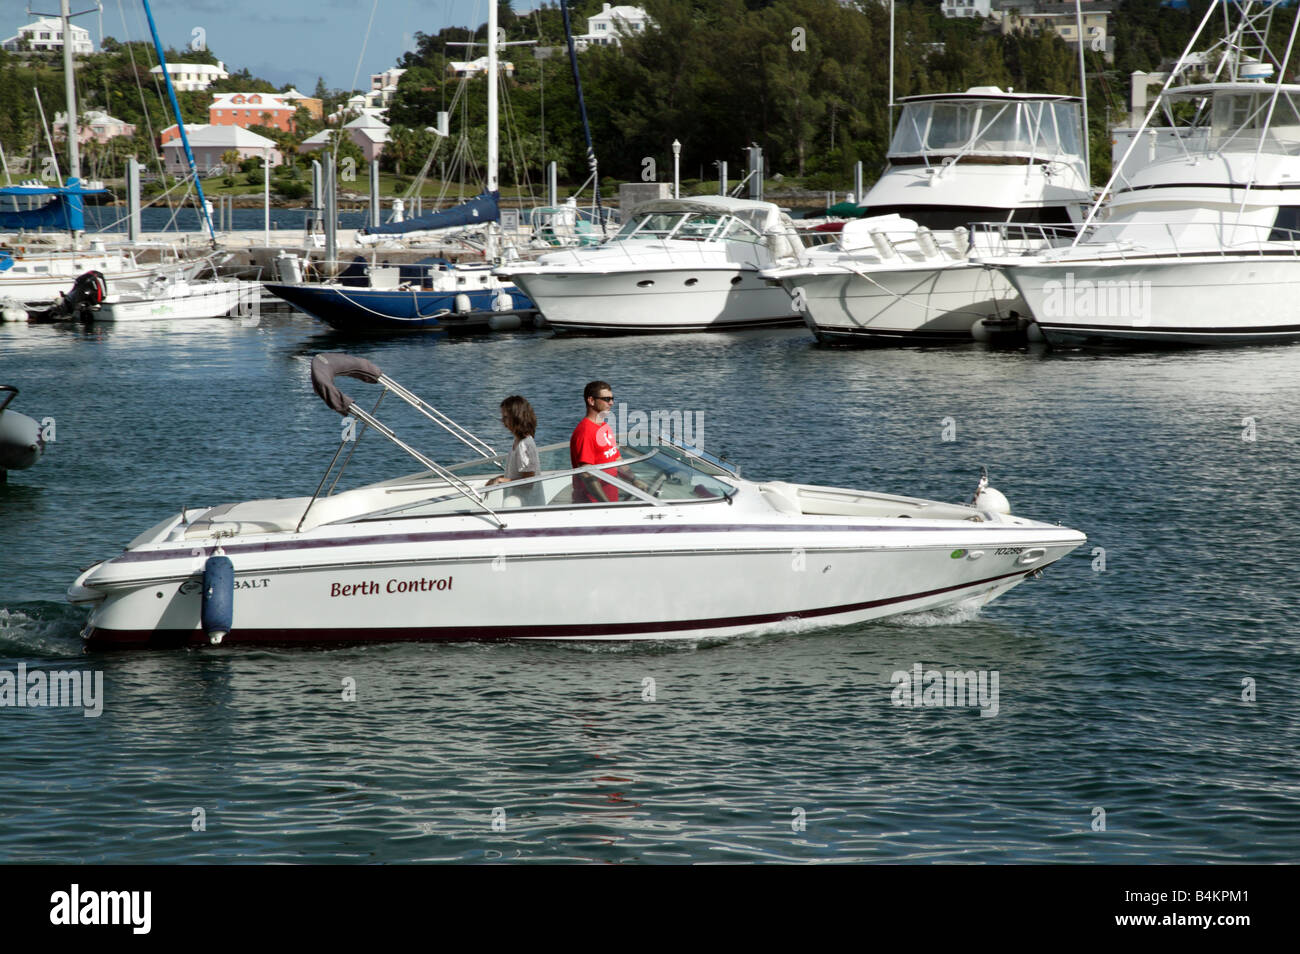 Piccola Barca A Motore Immagini e Fotos Stock - Alamy